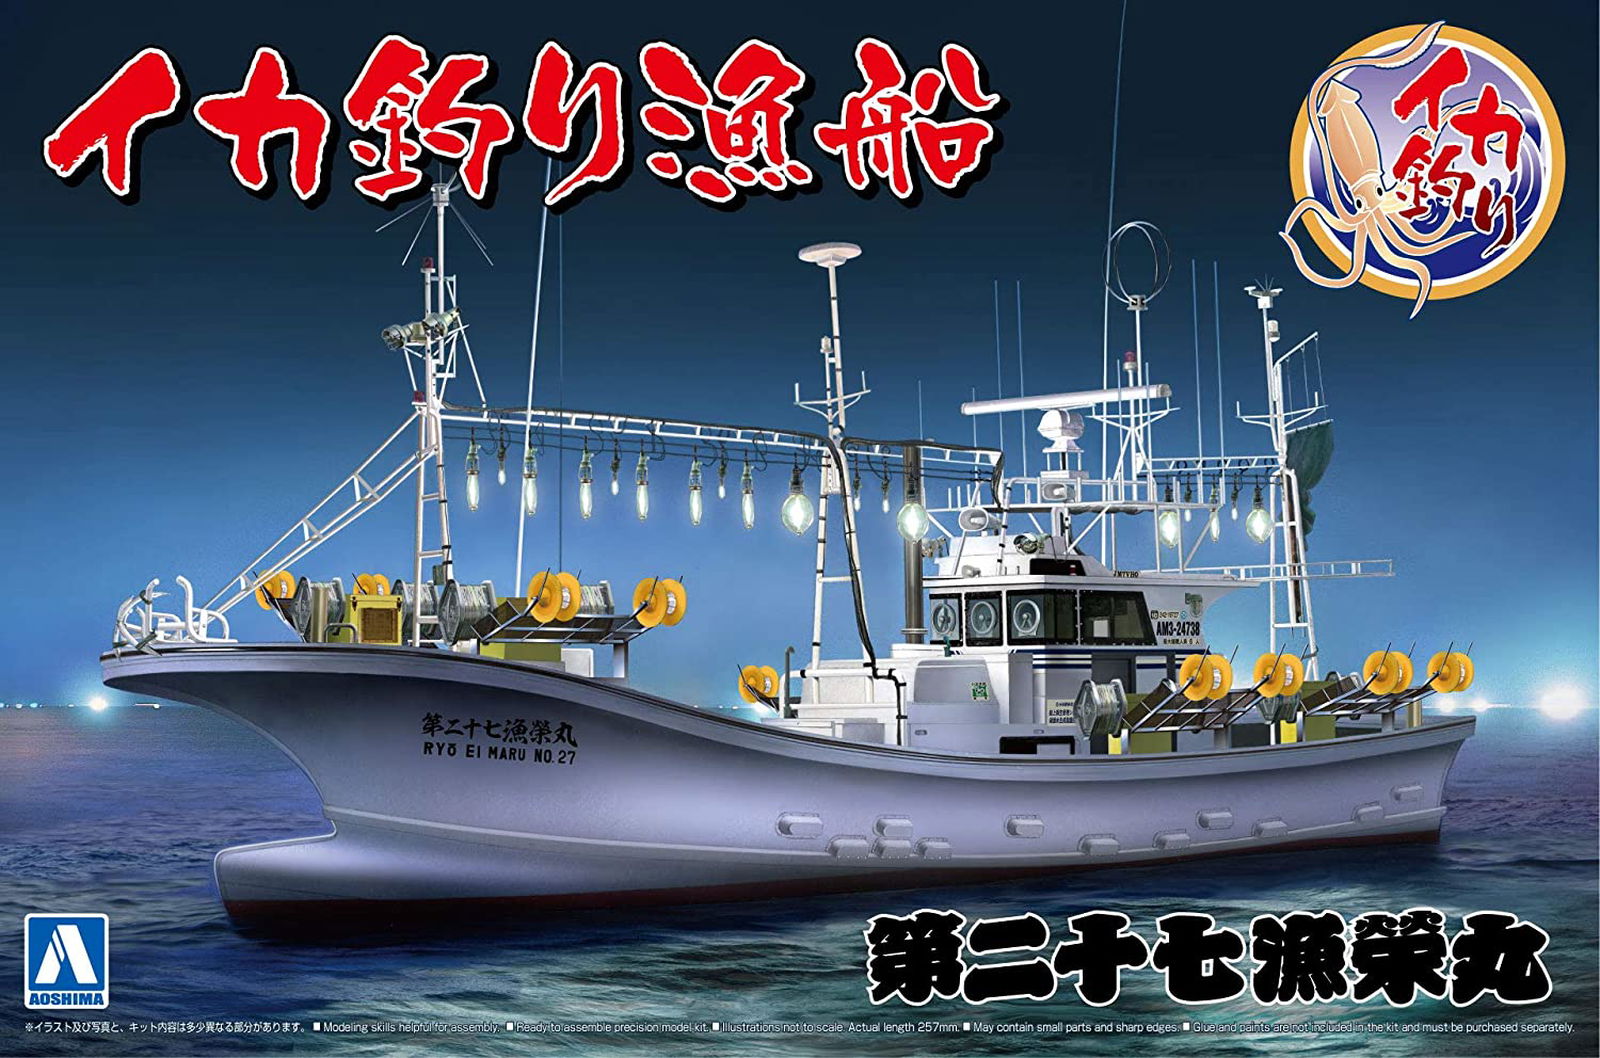 Aoshima Squid Fishing Boat - BanzaiHobby